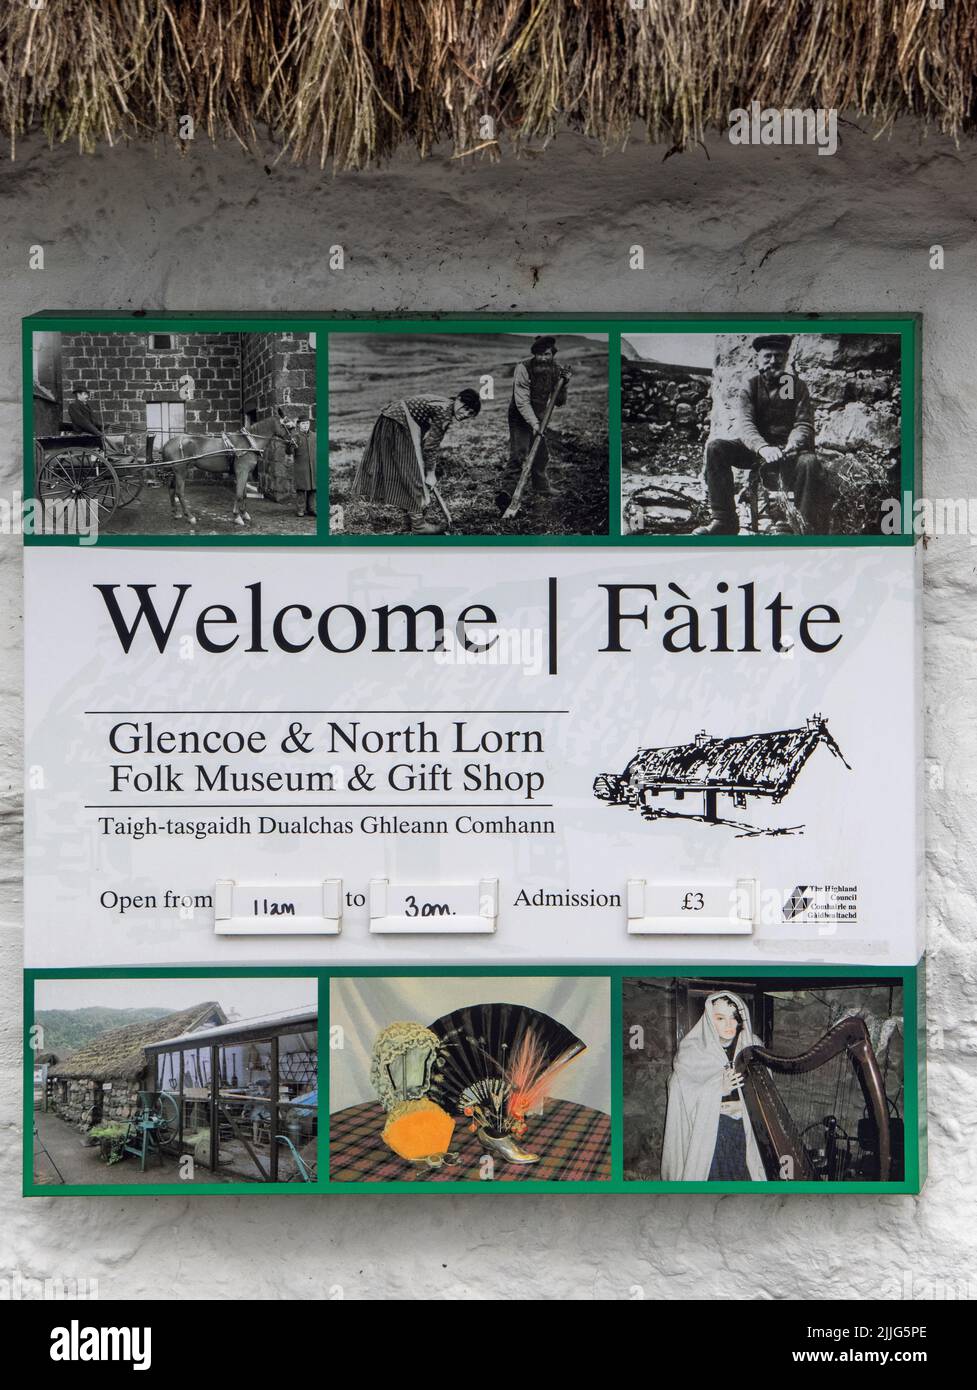 señal para el museo folklórico glencoe en el pueblo de glencoe en las tierras altas de escocia Foto de stock